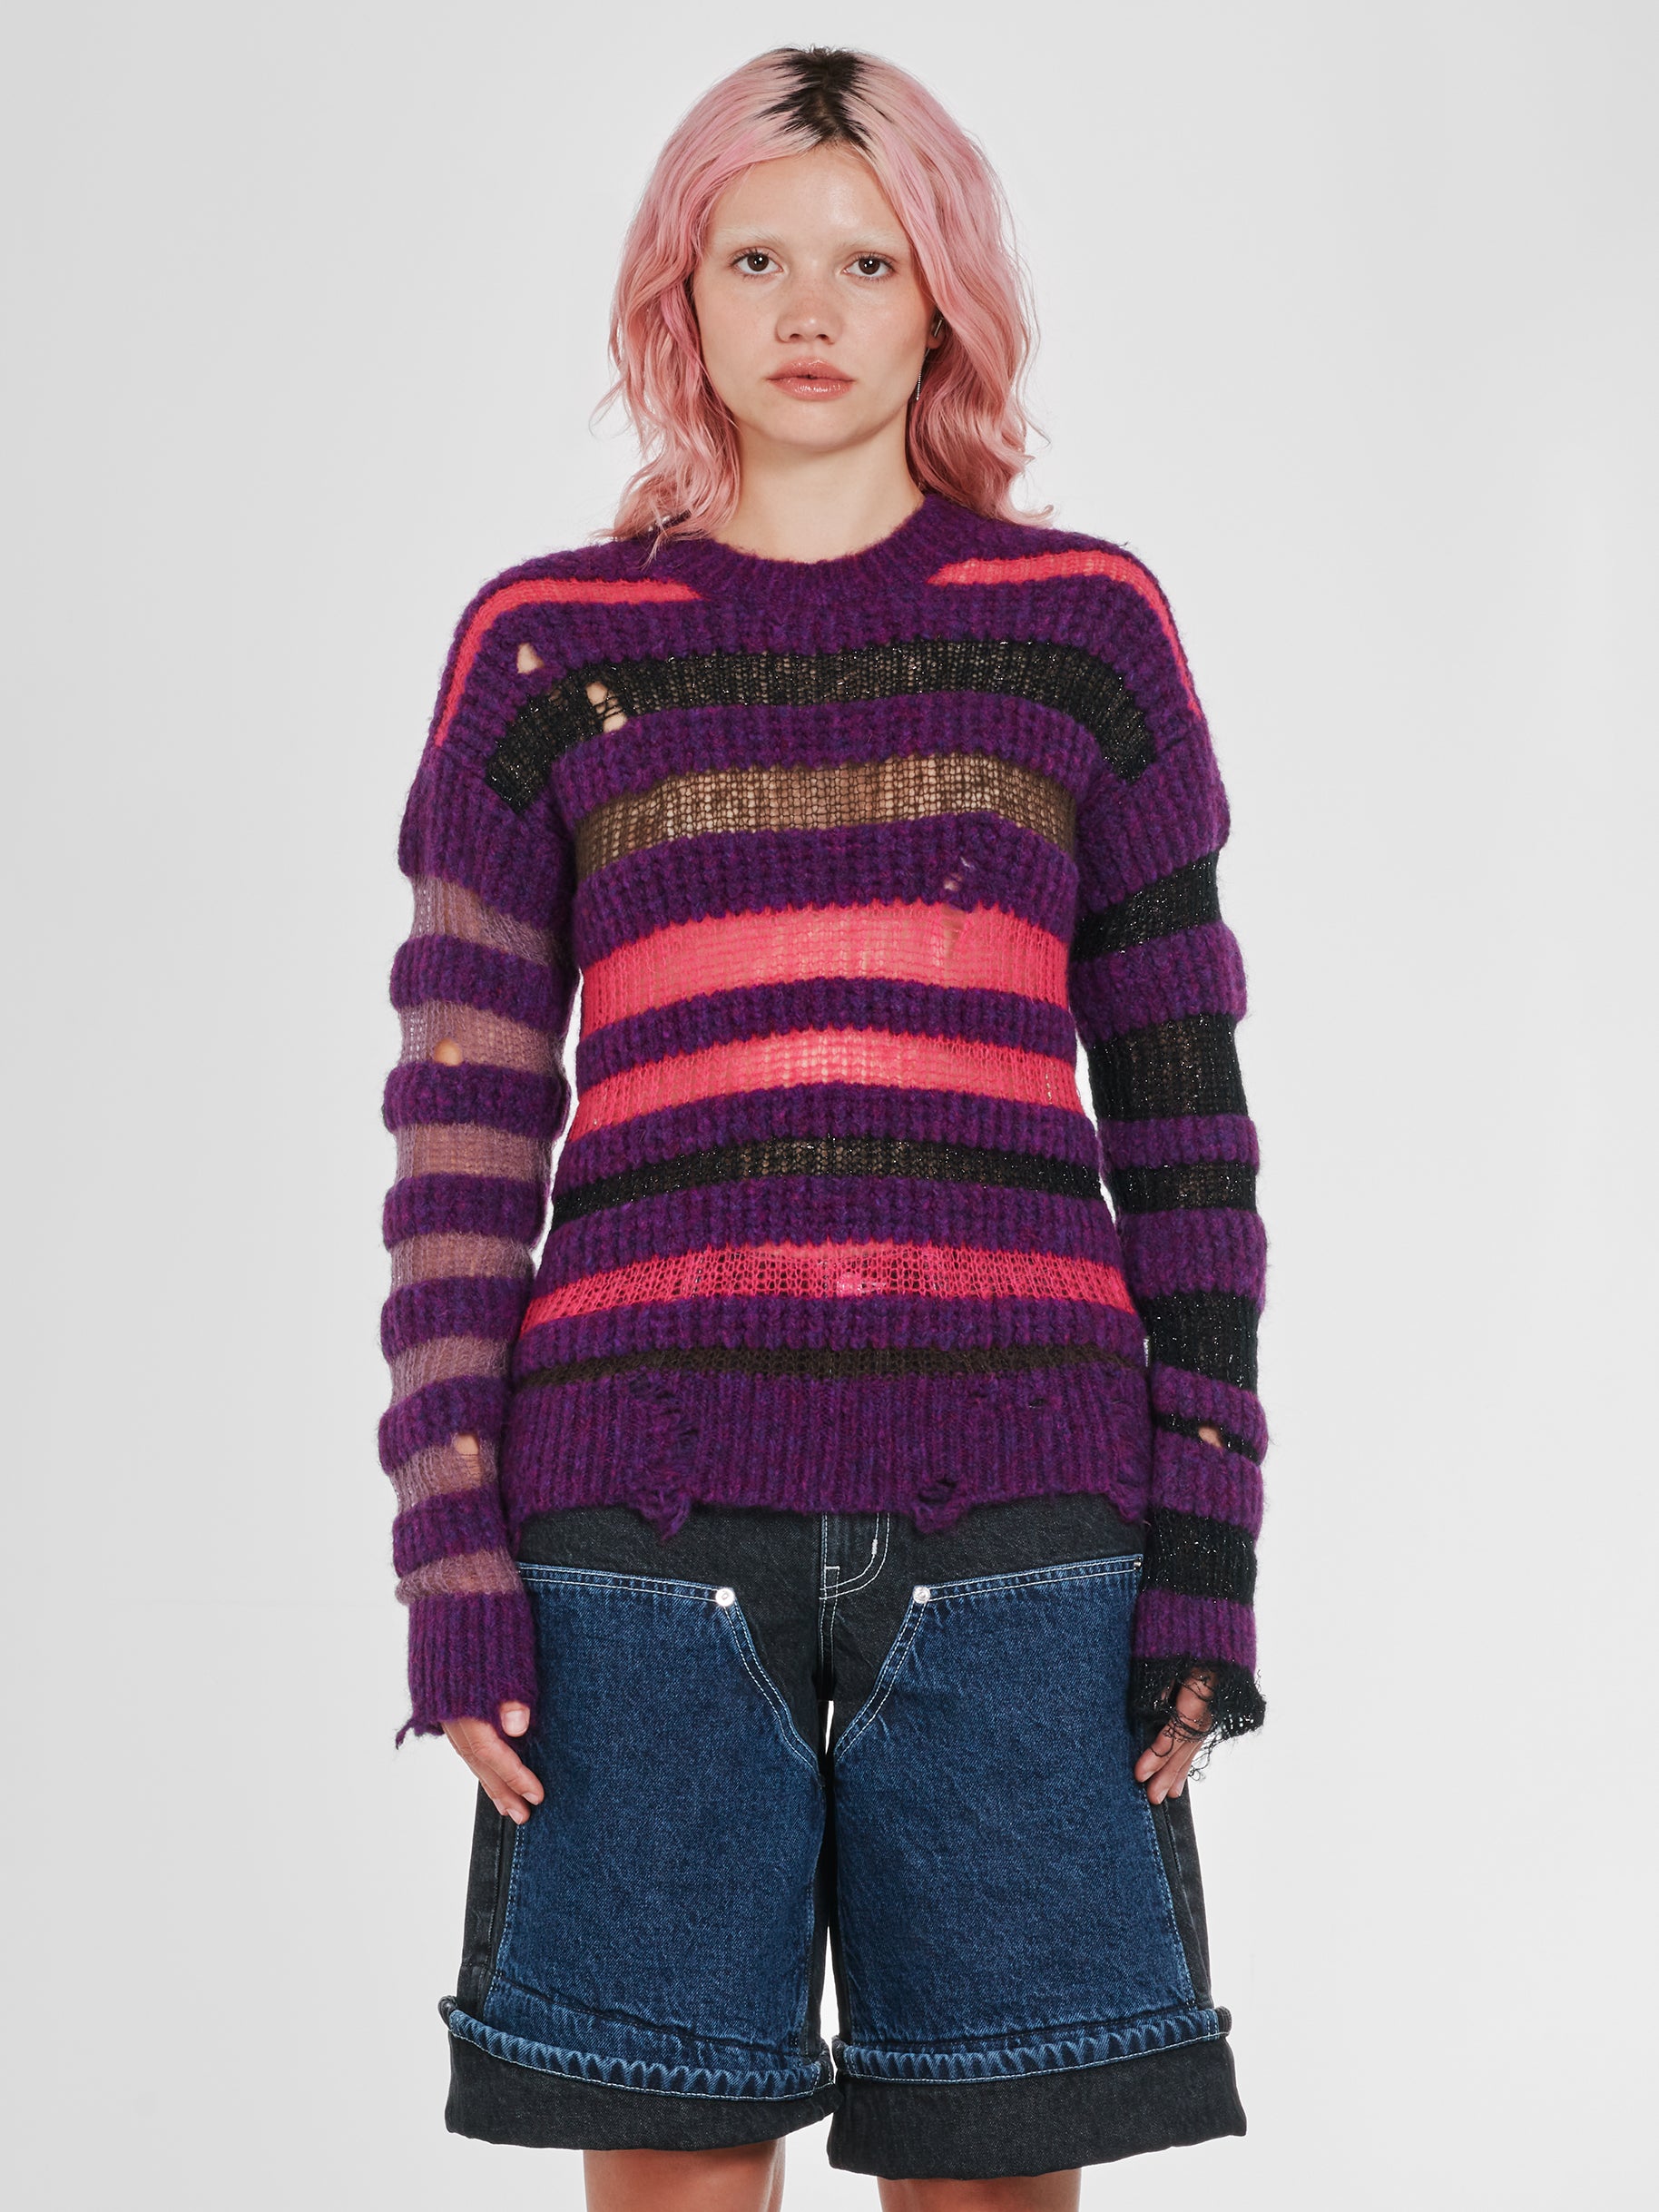 Heaven By Marc Jacobs - Women’s Bumpy Stripe Sweater - (Purple) view 1